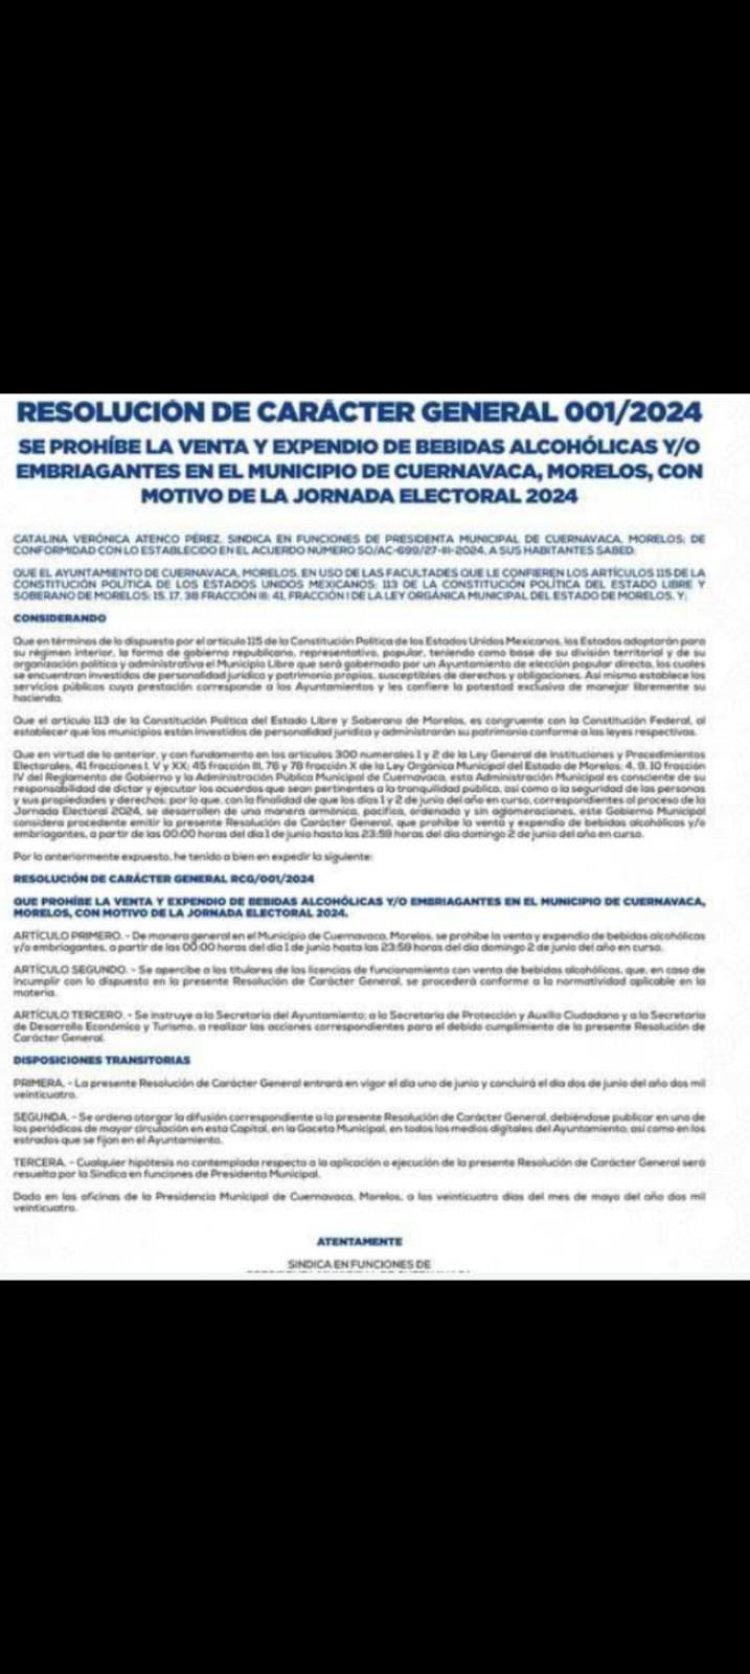 Oficial: habrá ley seca en Cuernavaca el día de la jornada electoral